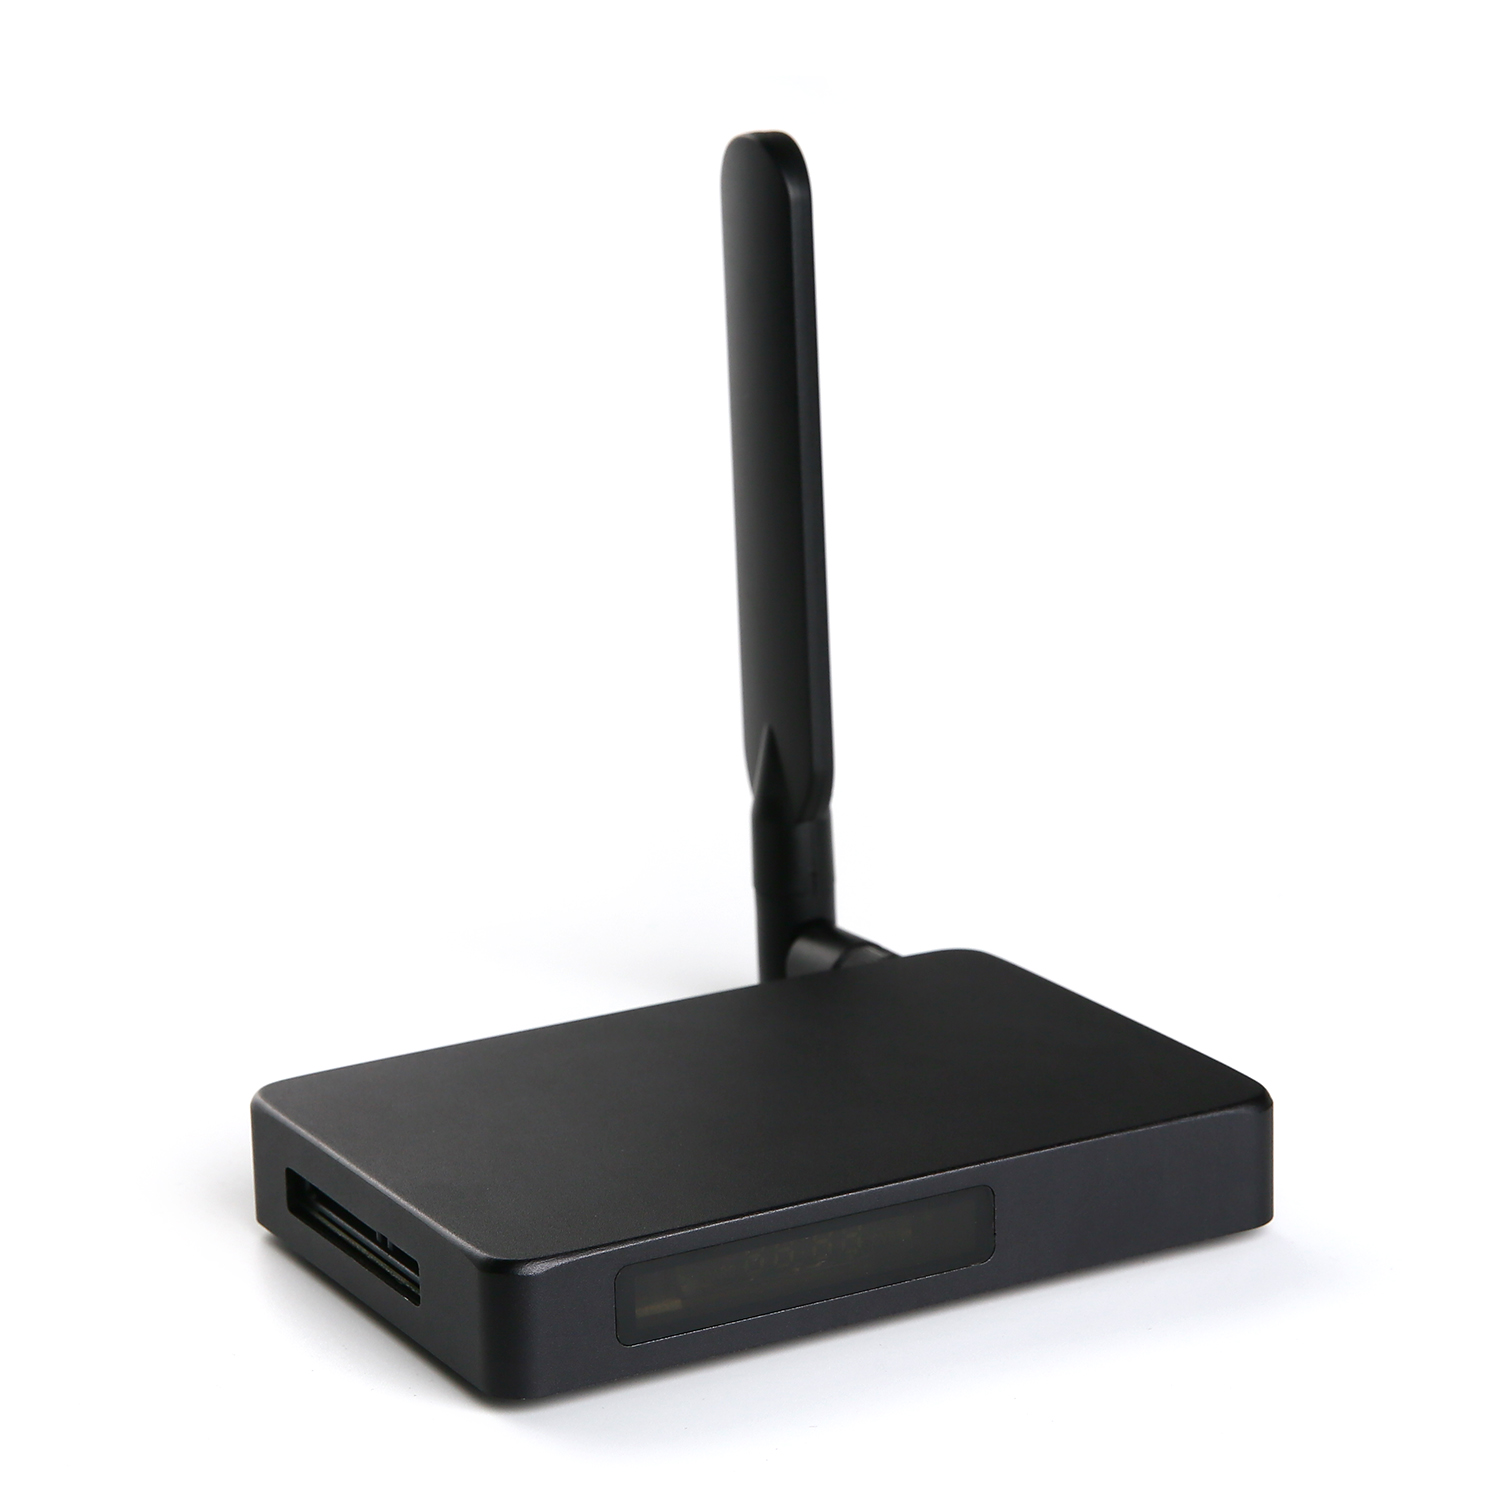 Desbloquee una conectividad ilimitada con nuestra caja de TV por Internet: la mejor experiencia de entrada HDMI, con tecnología Realtek RTD1295